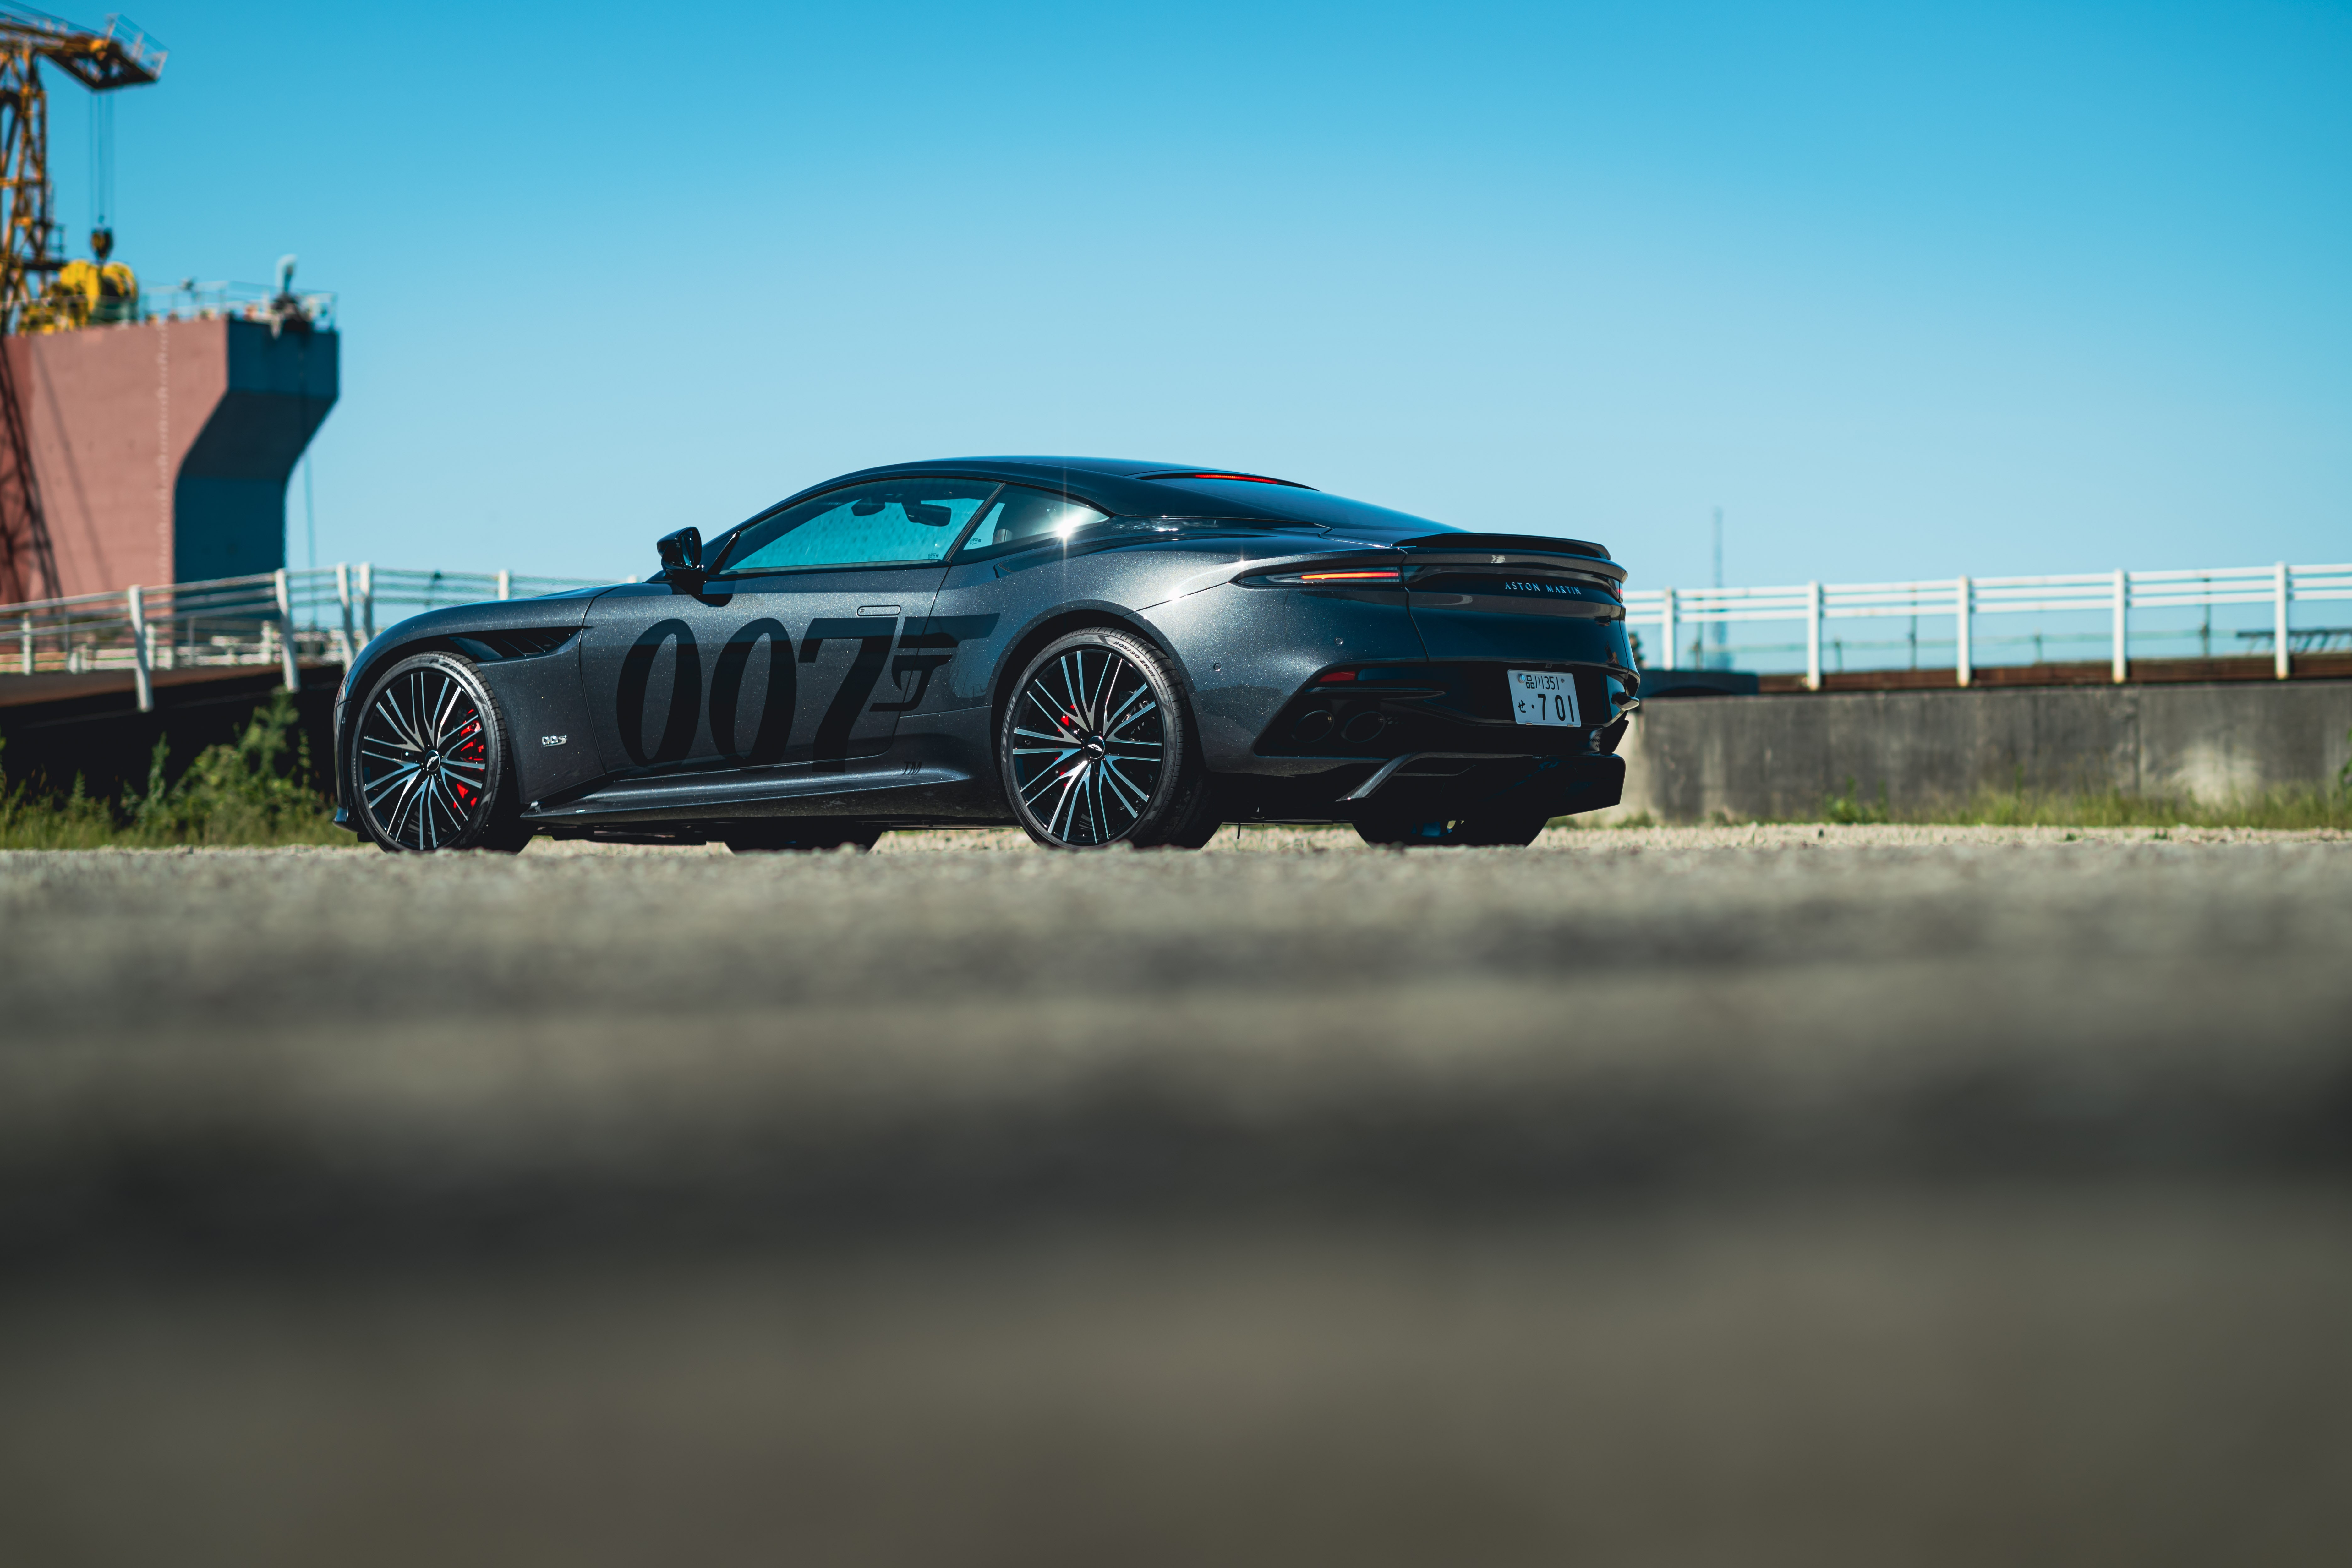 Descarga gratuita de fondo de pantalla para móvil de Aston Martin, Superdeportivo, Vehículos, Aston Martin Dbs Superleggera.